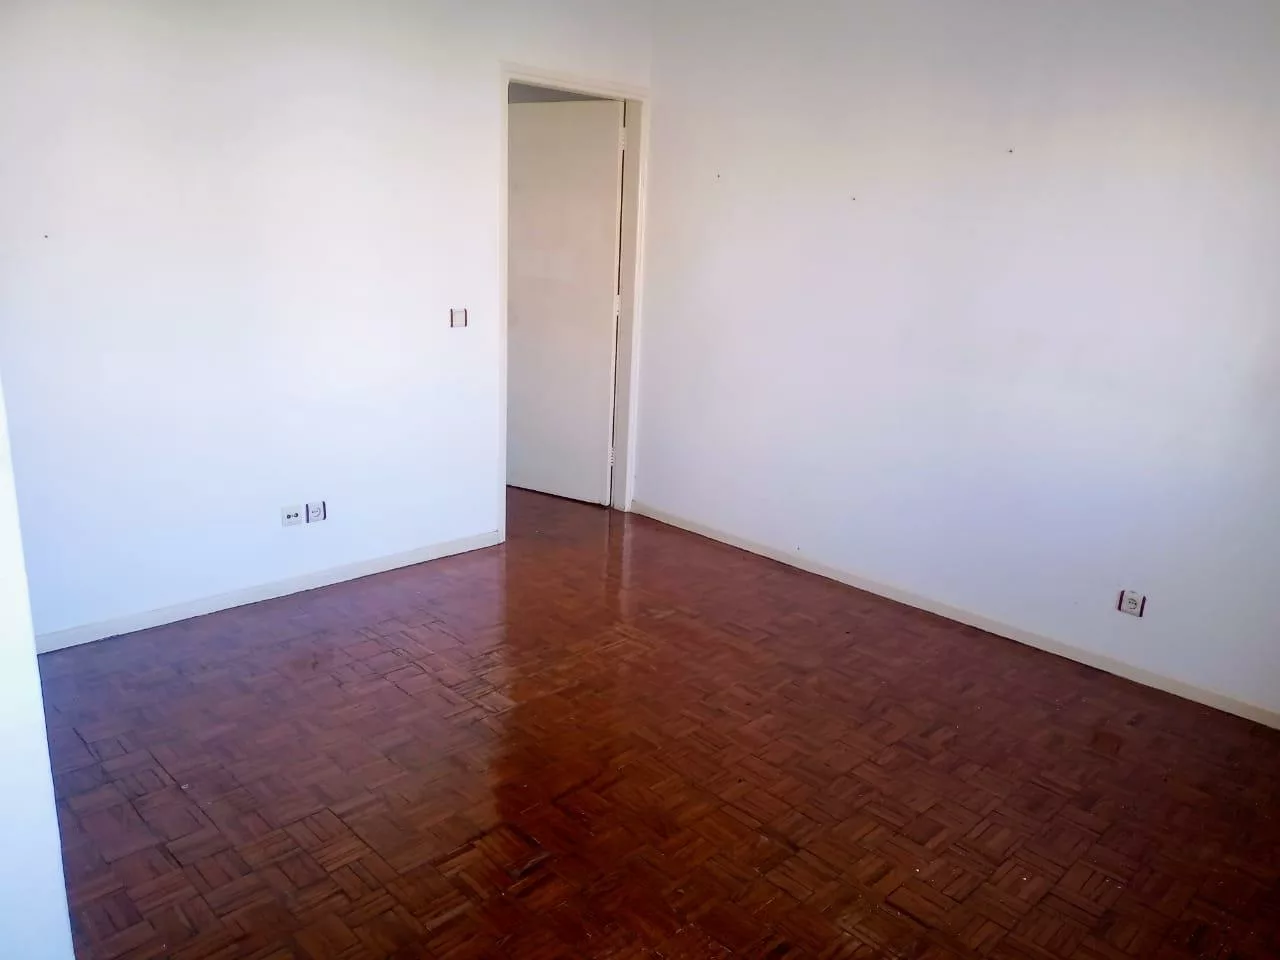 4-Bedroom House in Sommerschield 1, Maputo – Rental